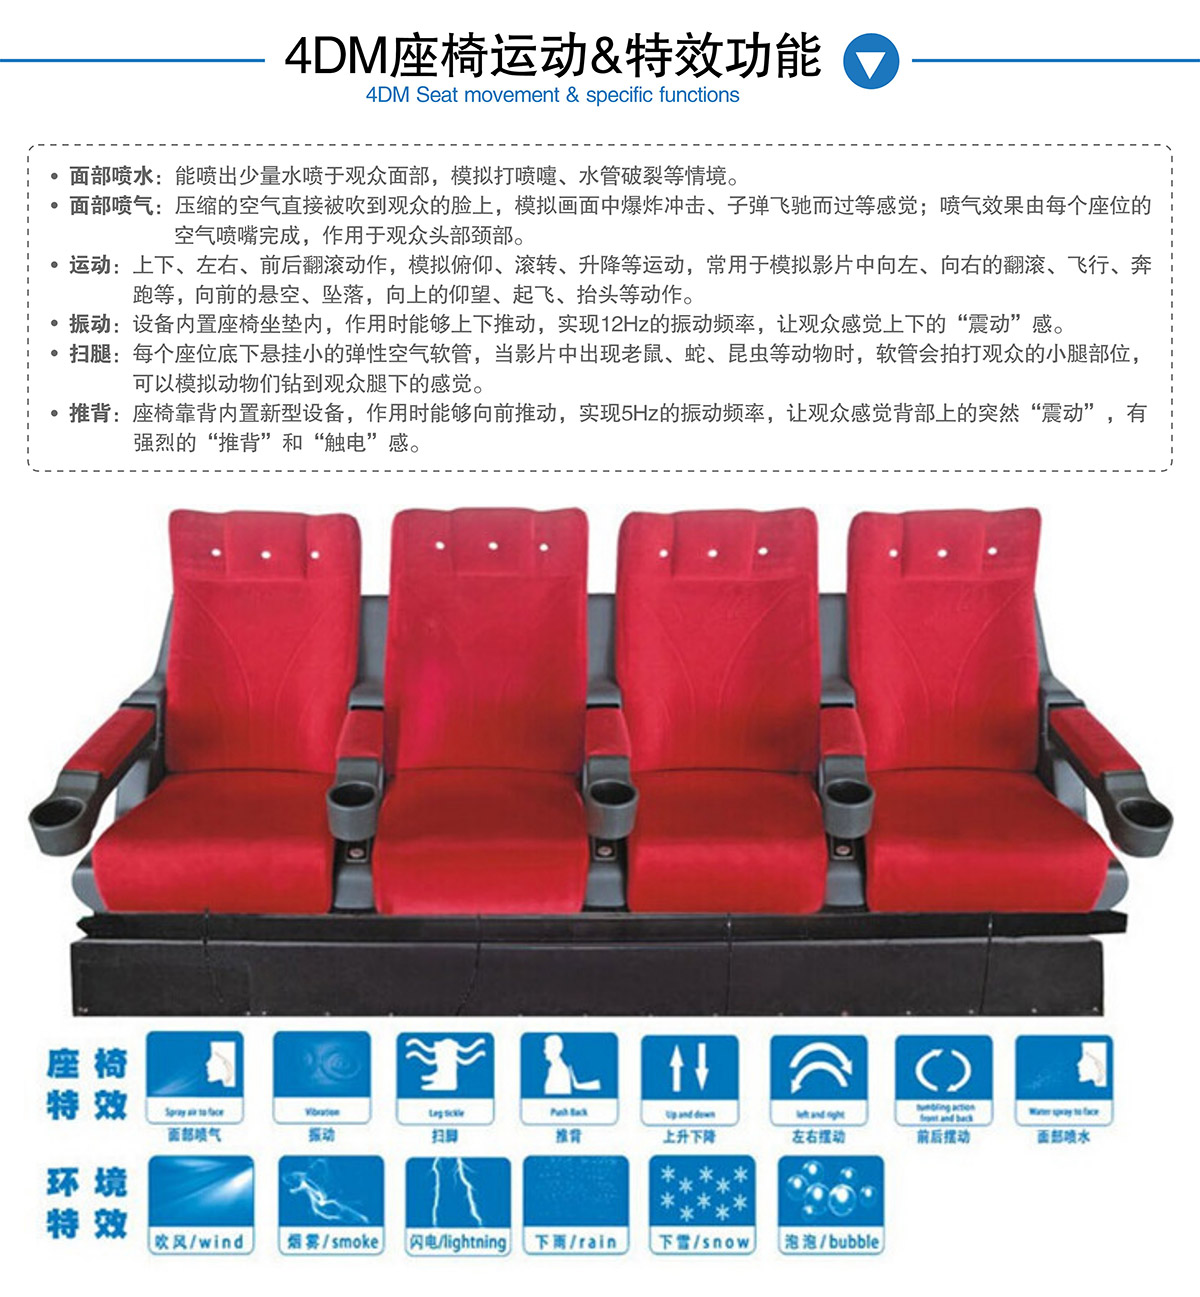 公共安全4DM座椅运动和特效功能.jpg